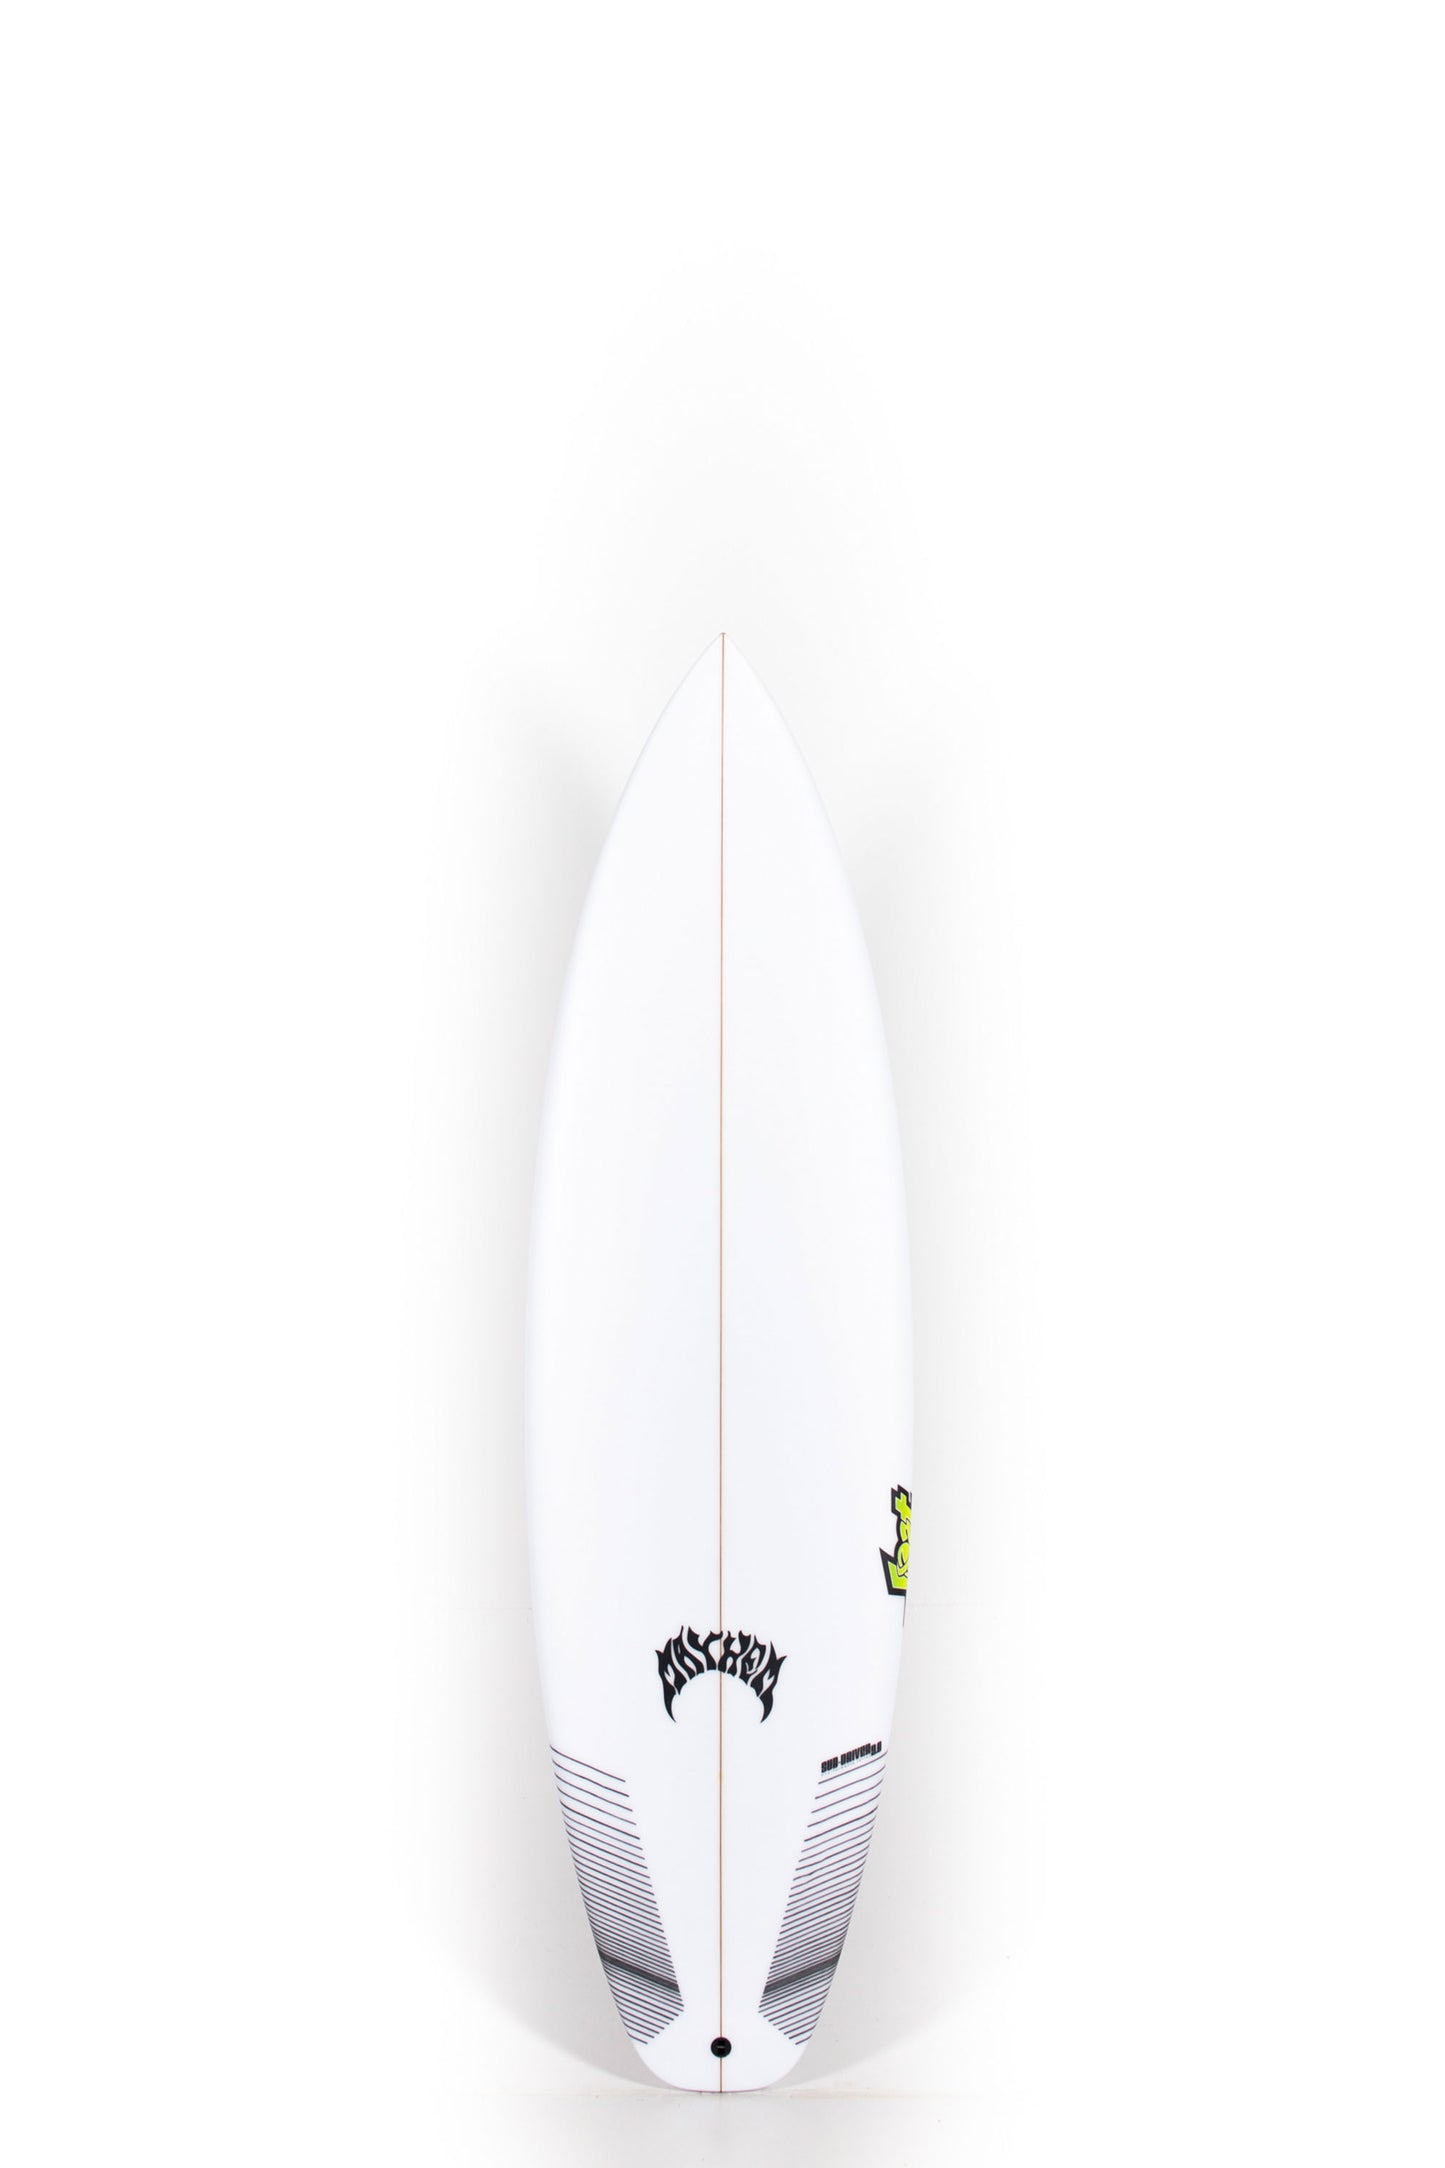 Lost Surfboards - SUB DRIVER 2.0 by Matt Biolos - 6'3” x 20,25 x 2